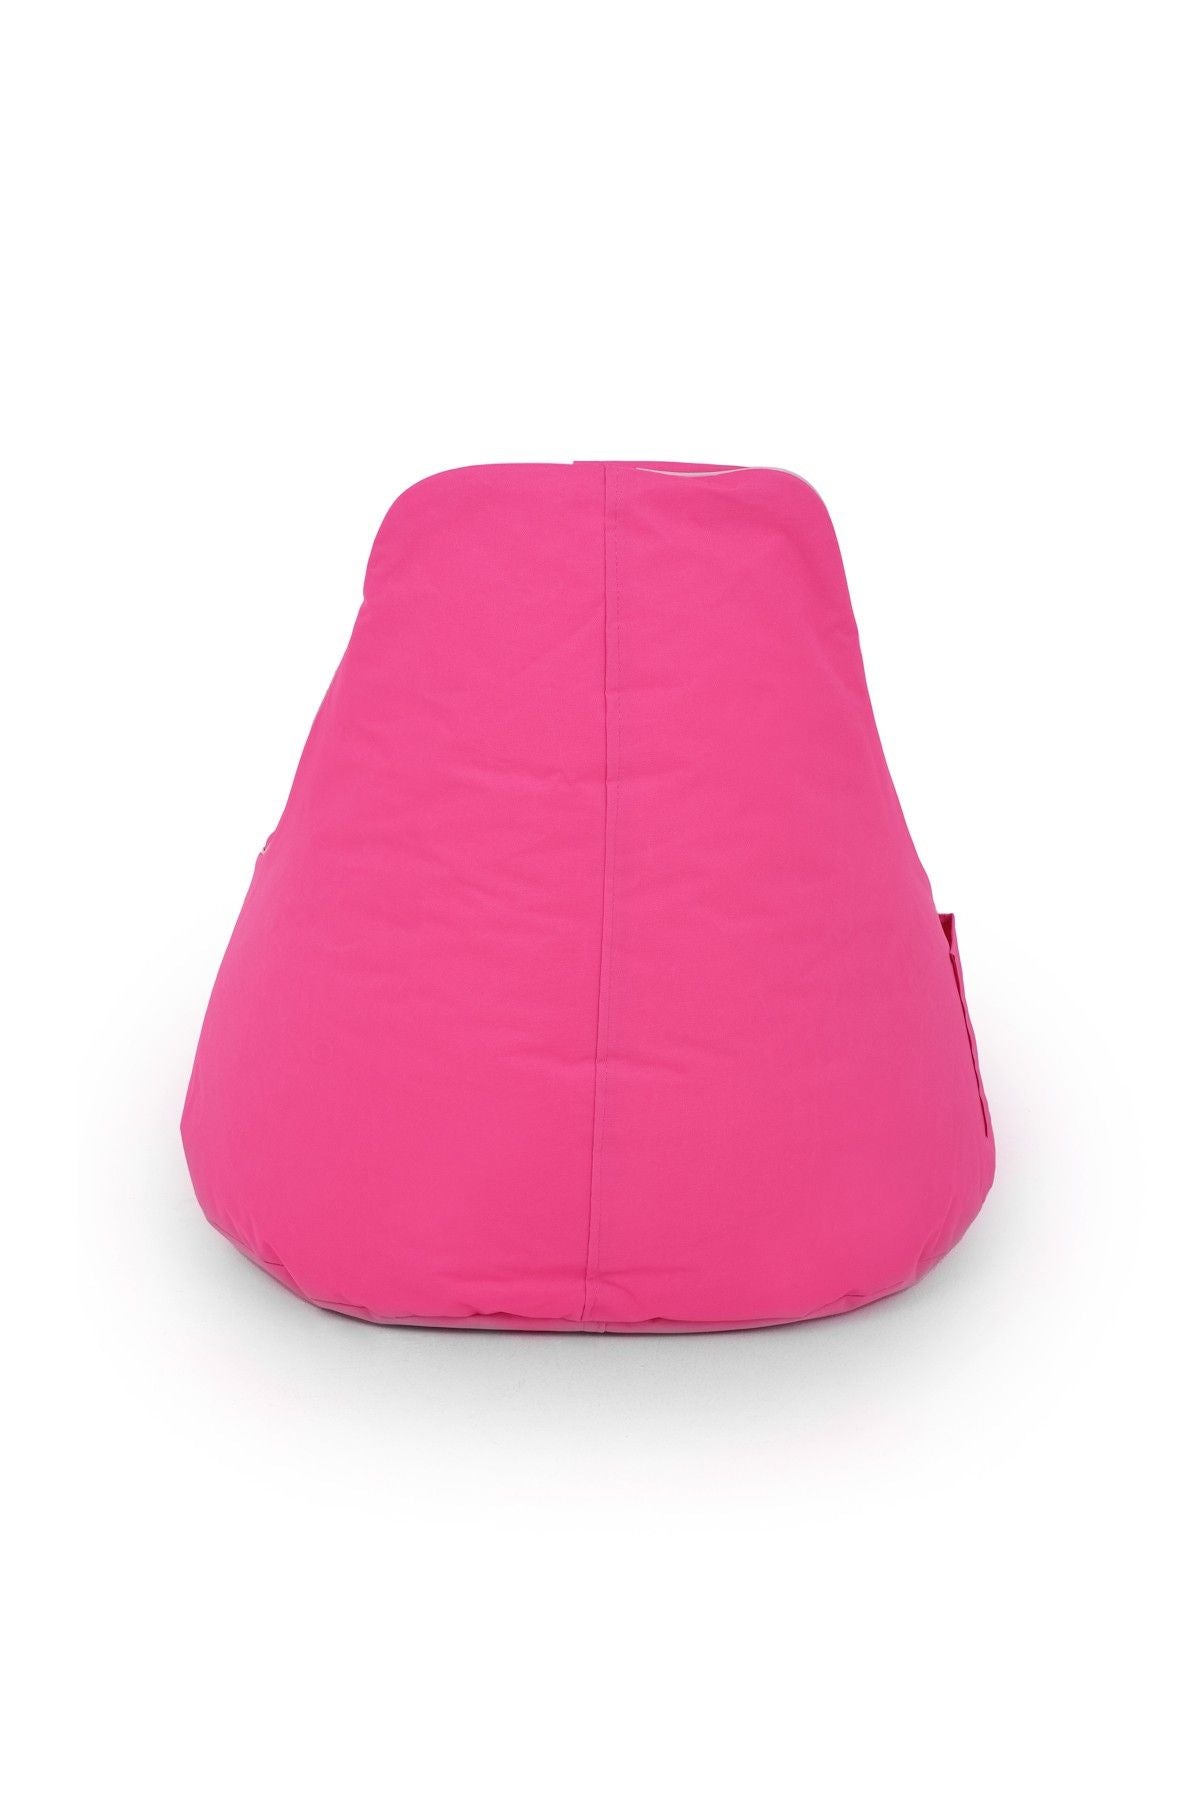 Golf - Pink - Bean Bag